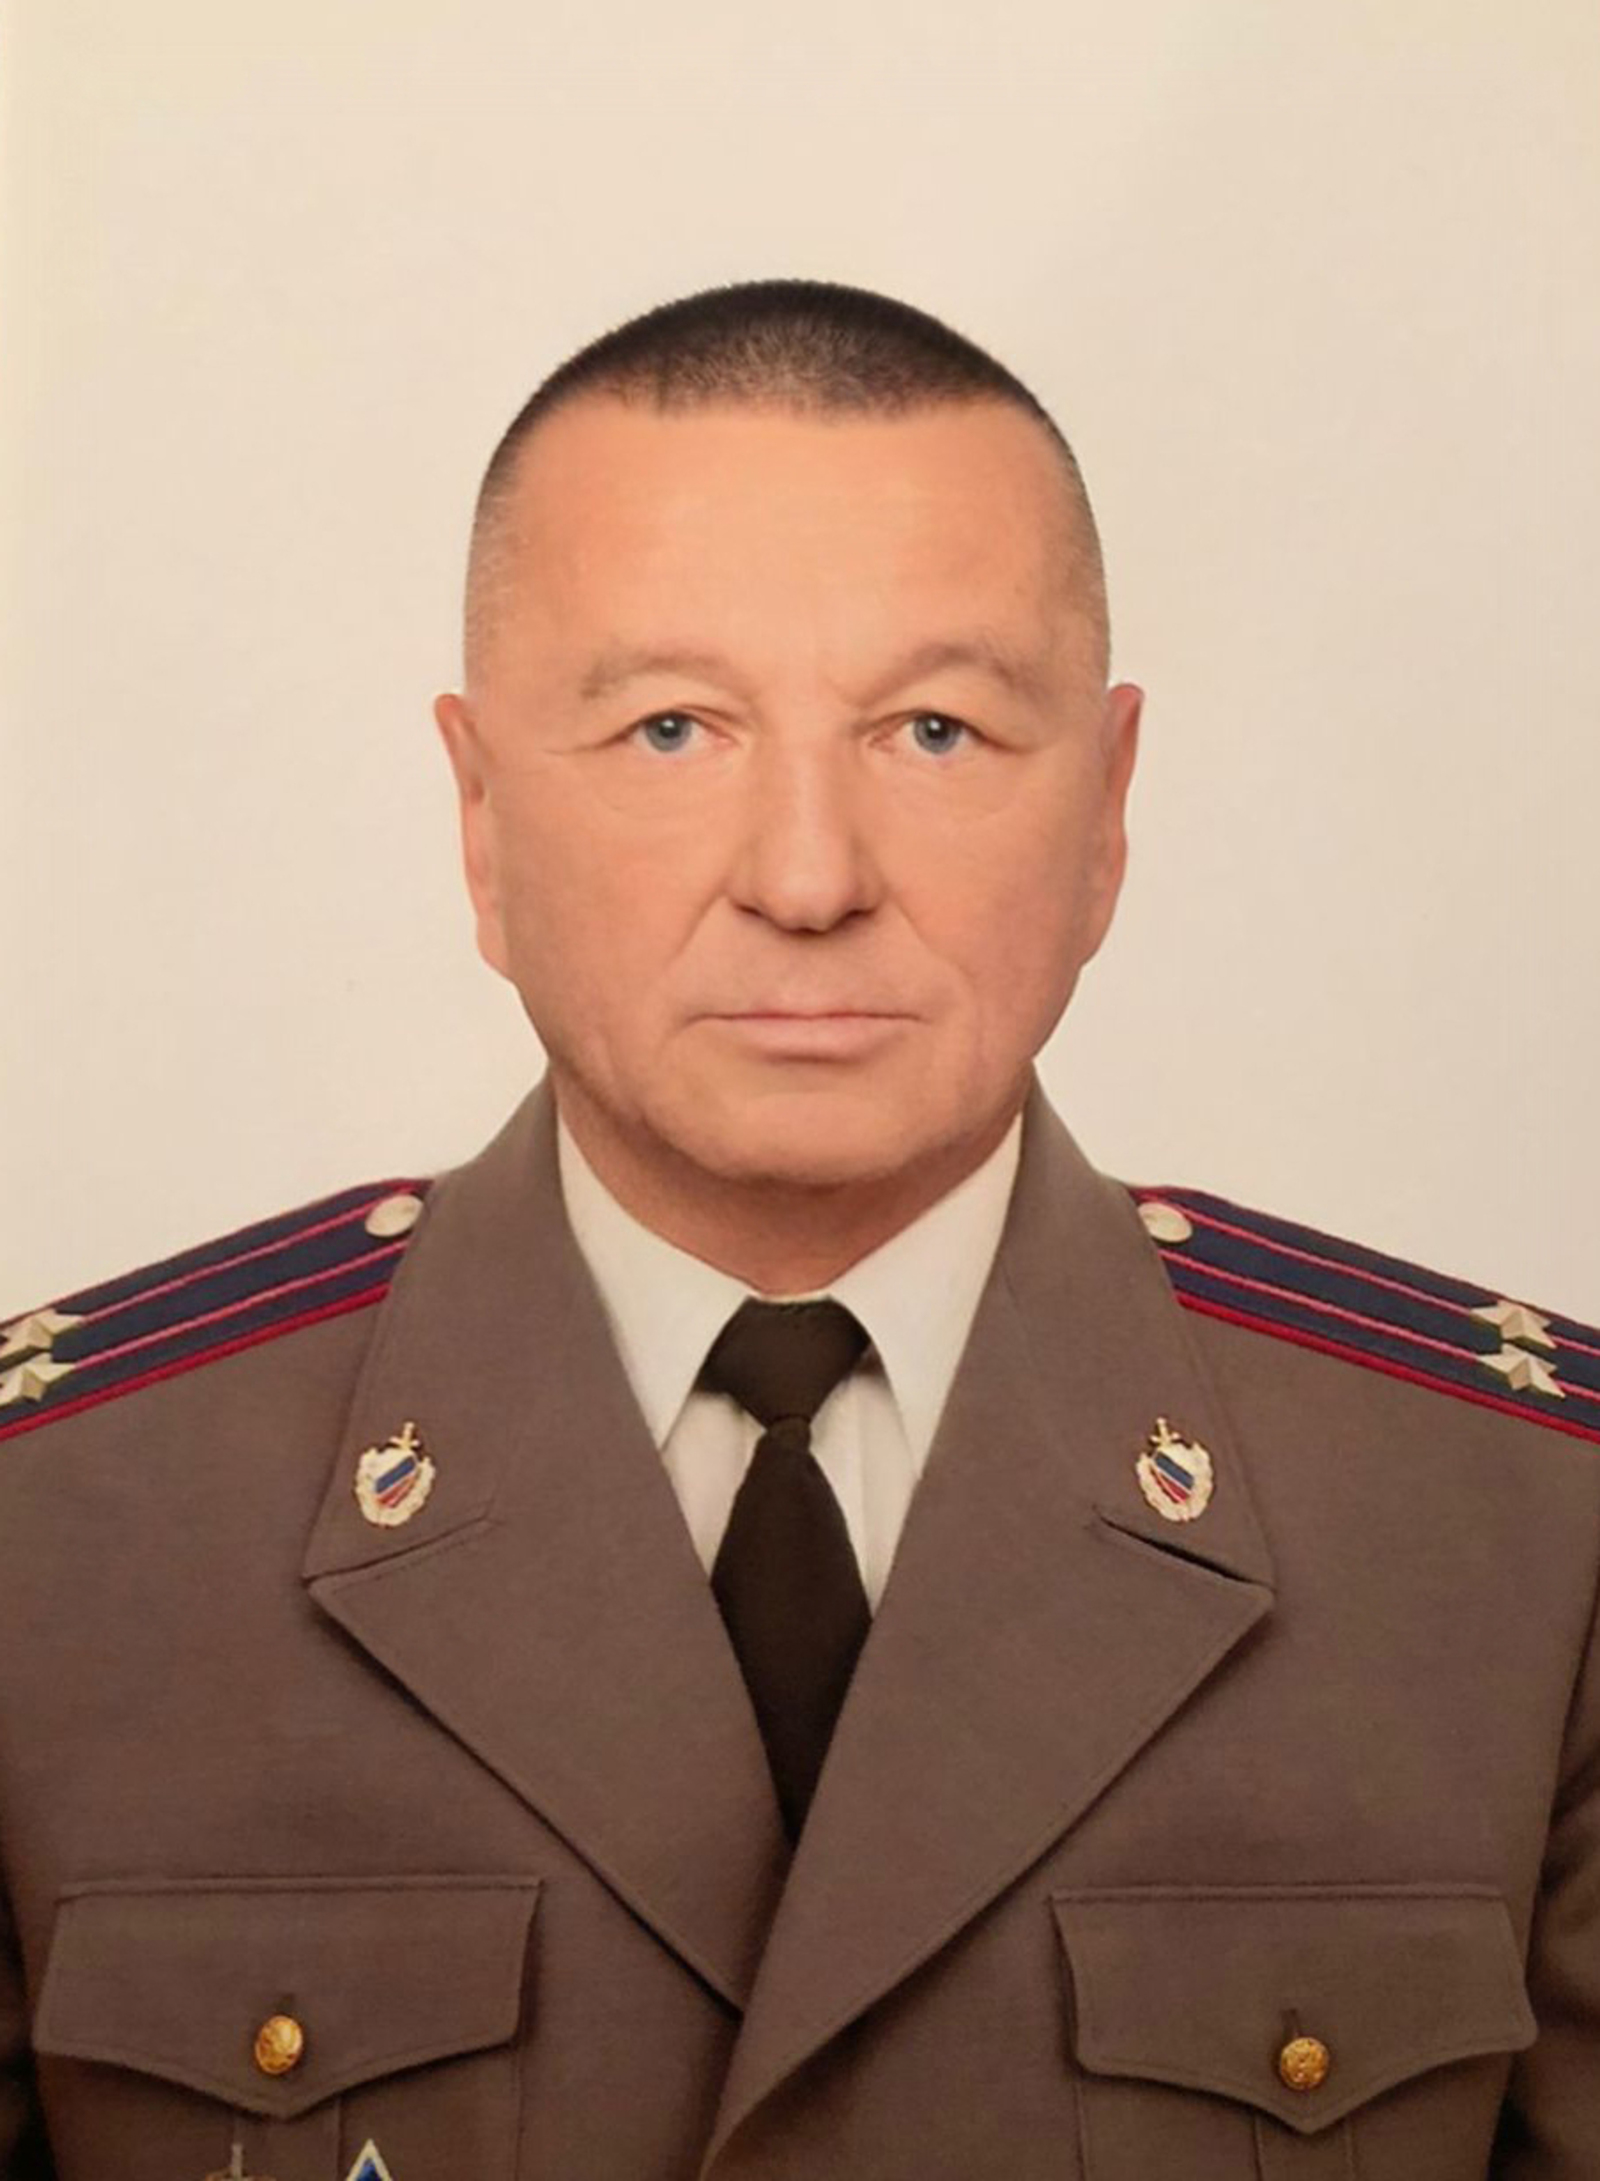 Отличник Советской Армии Марат Камакаев пошёл по стопам отца и нашел себя в служении Родине, закону и народу